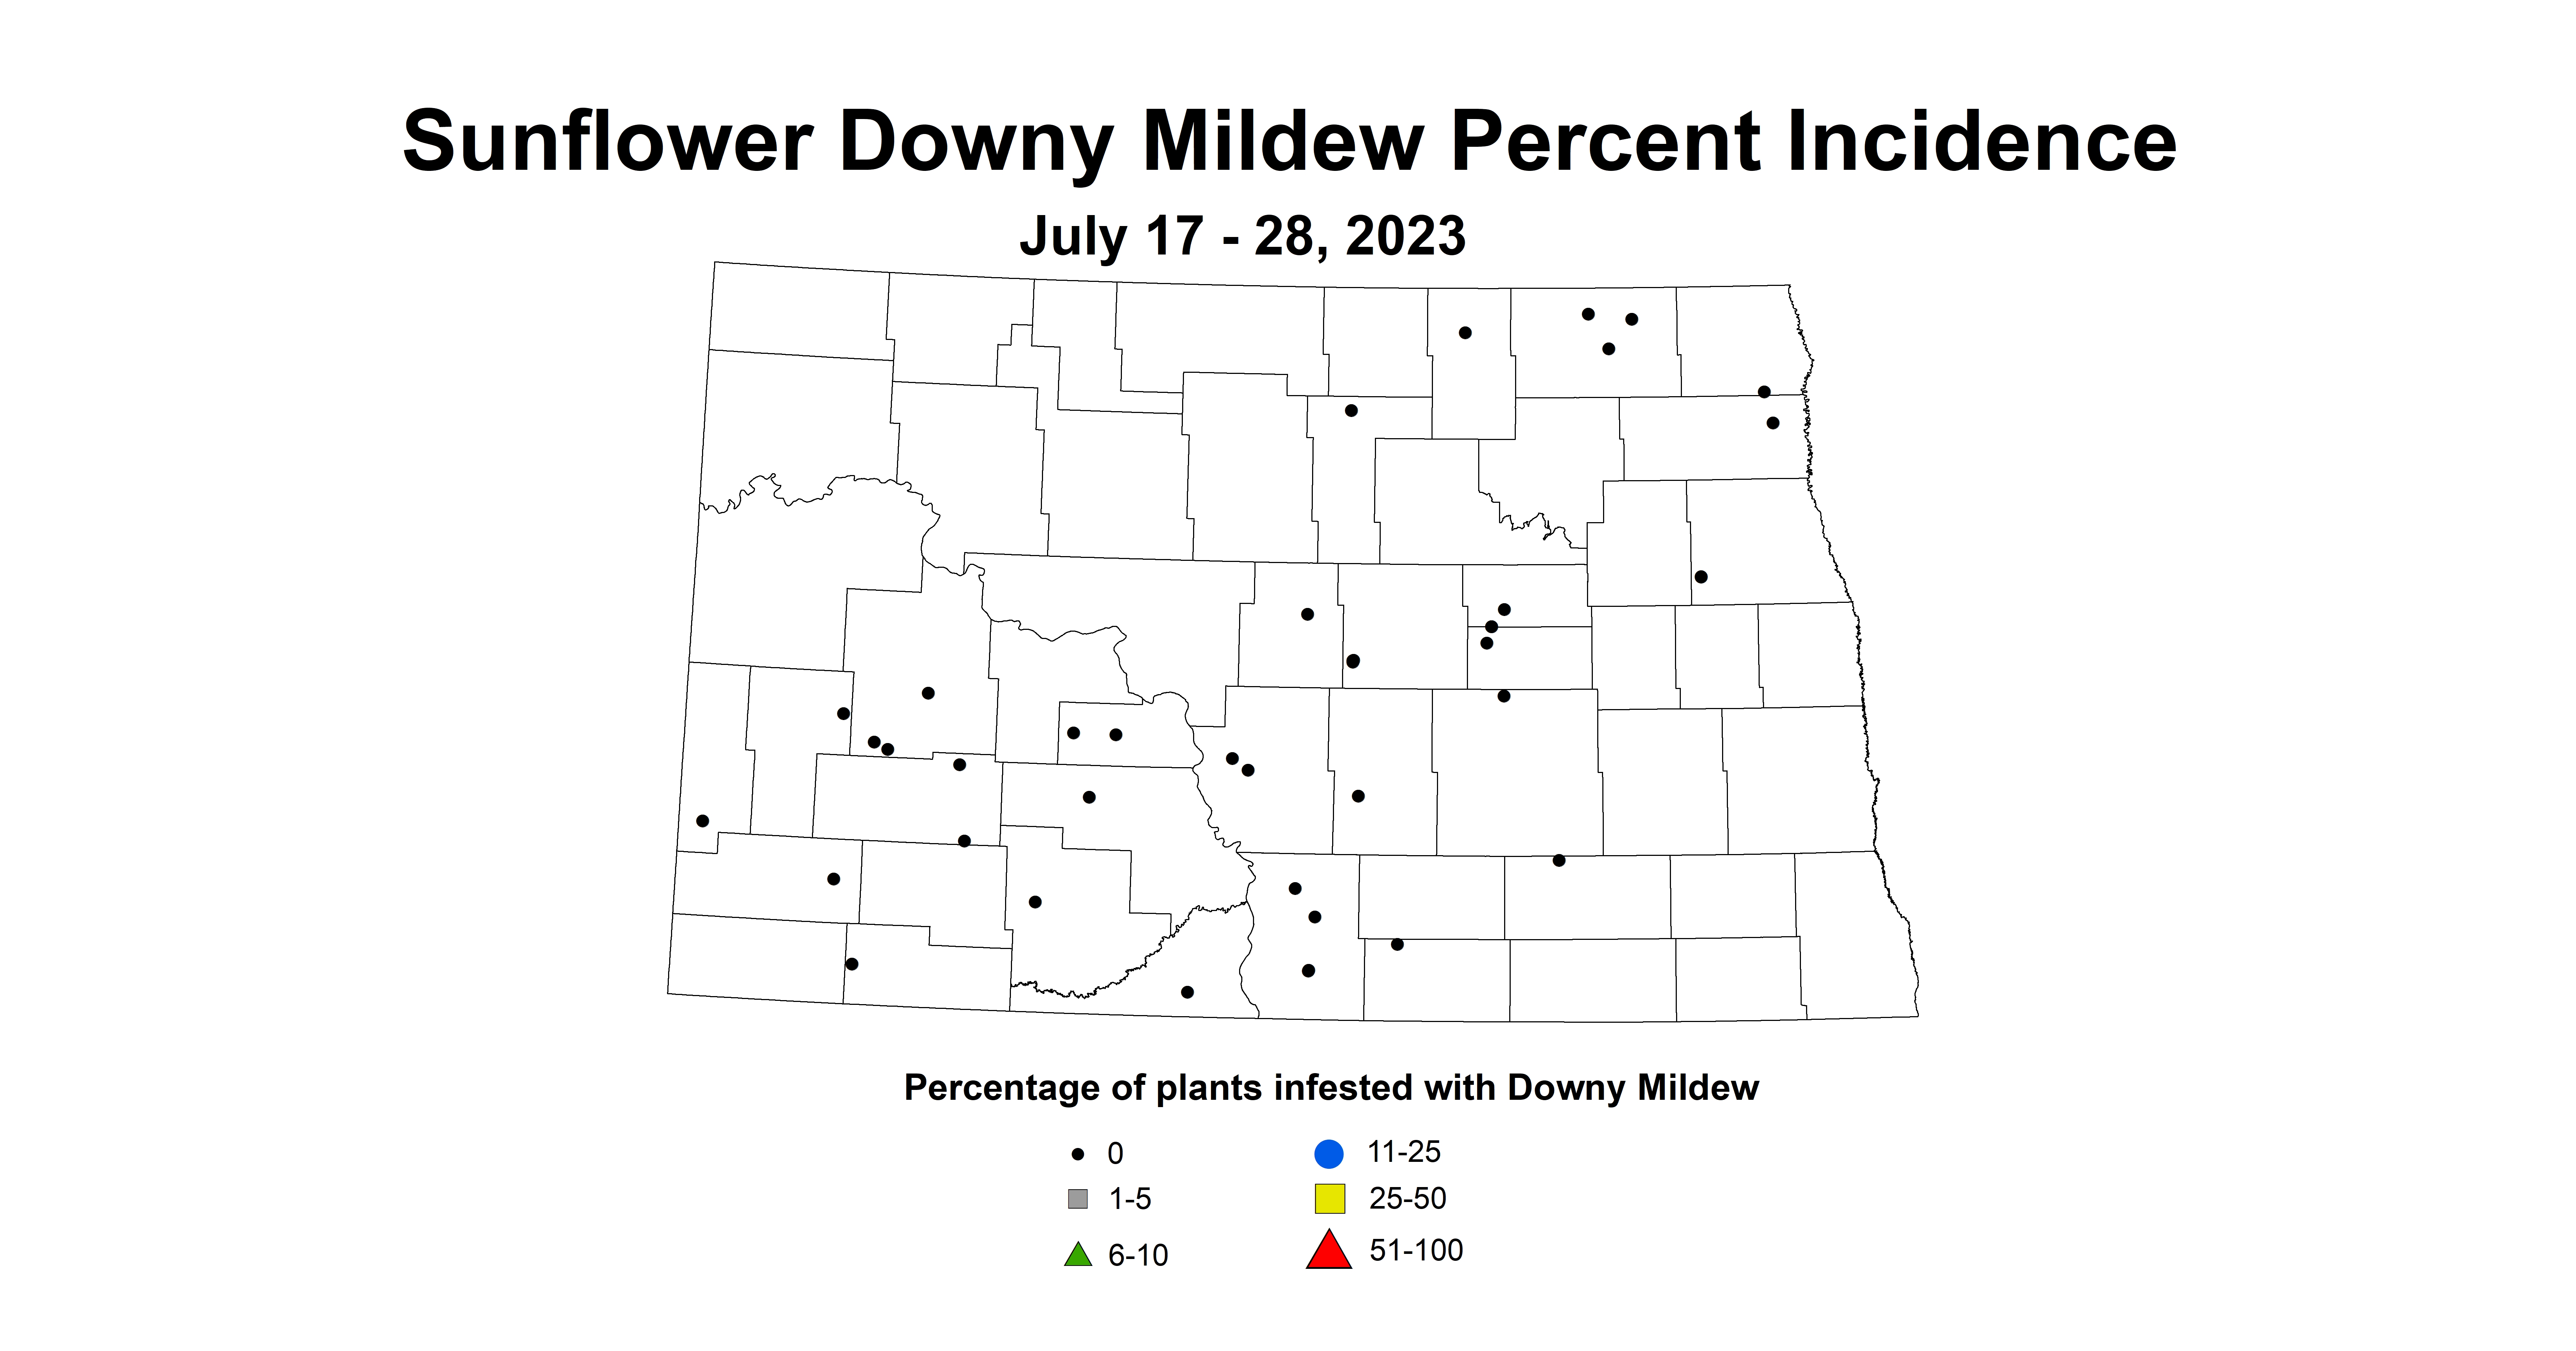 sunflower downy mildew July 17-28 2023